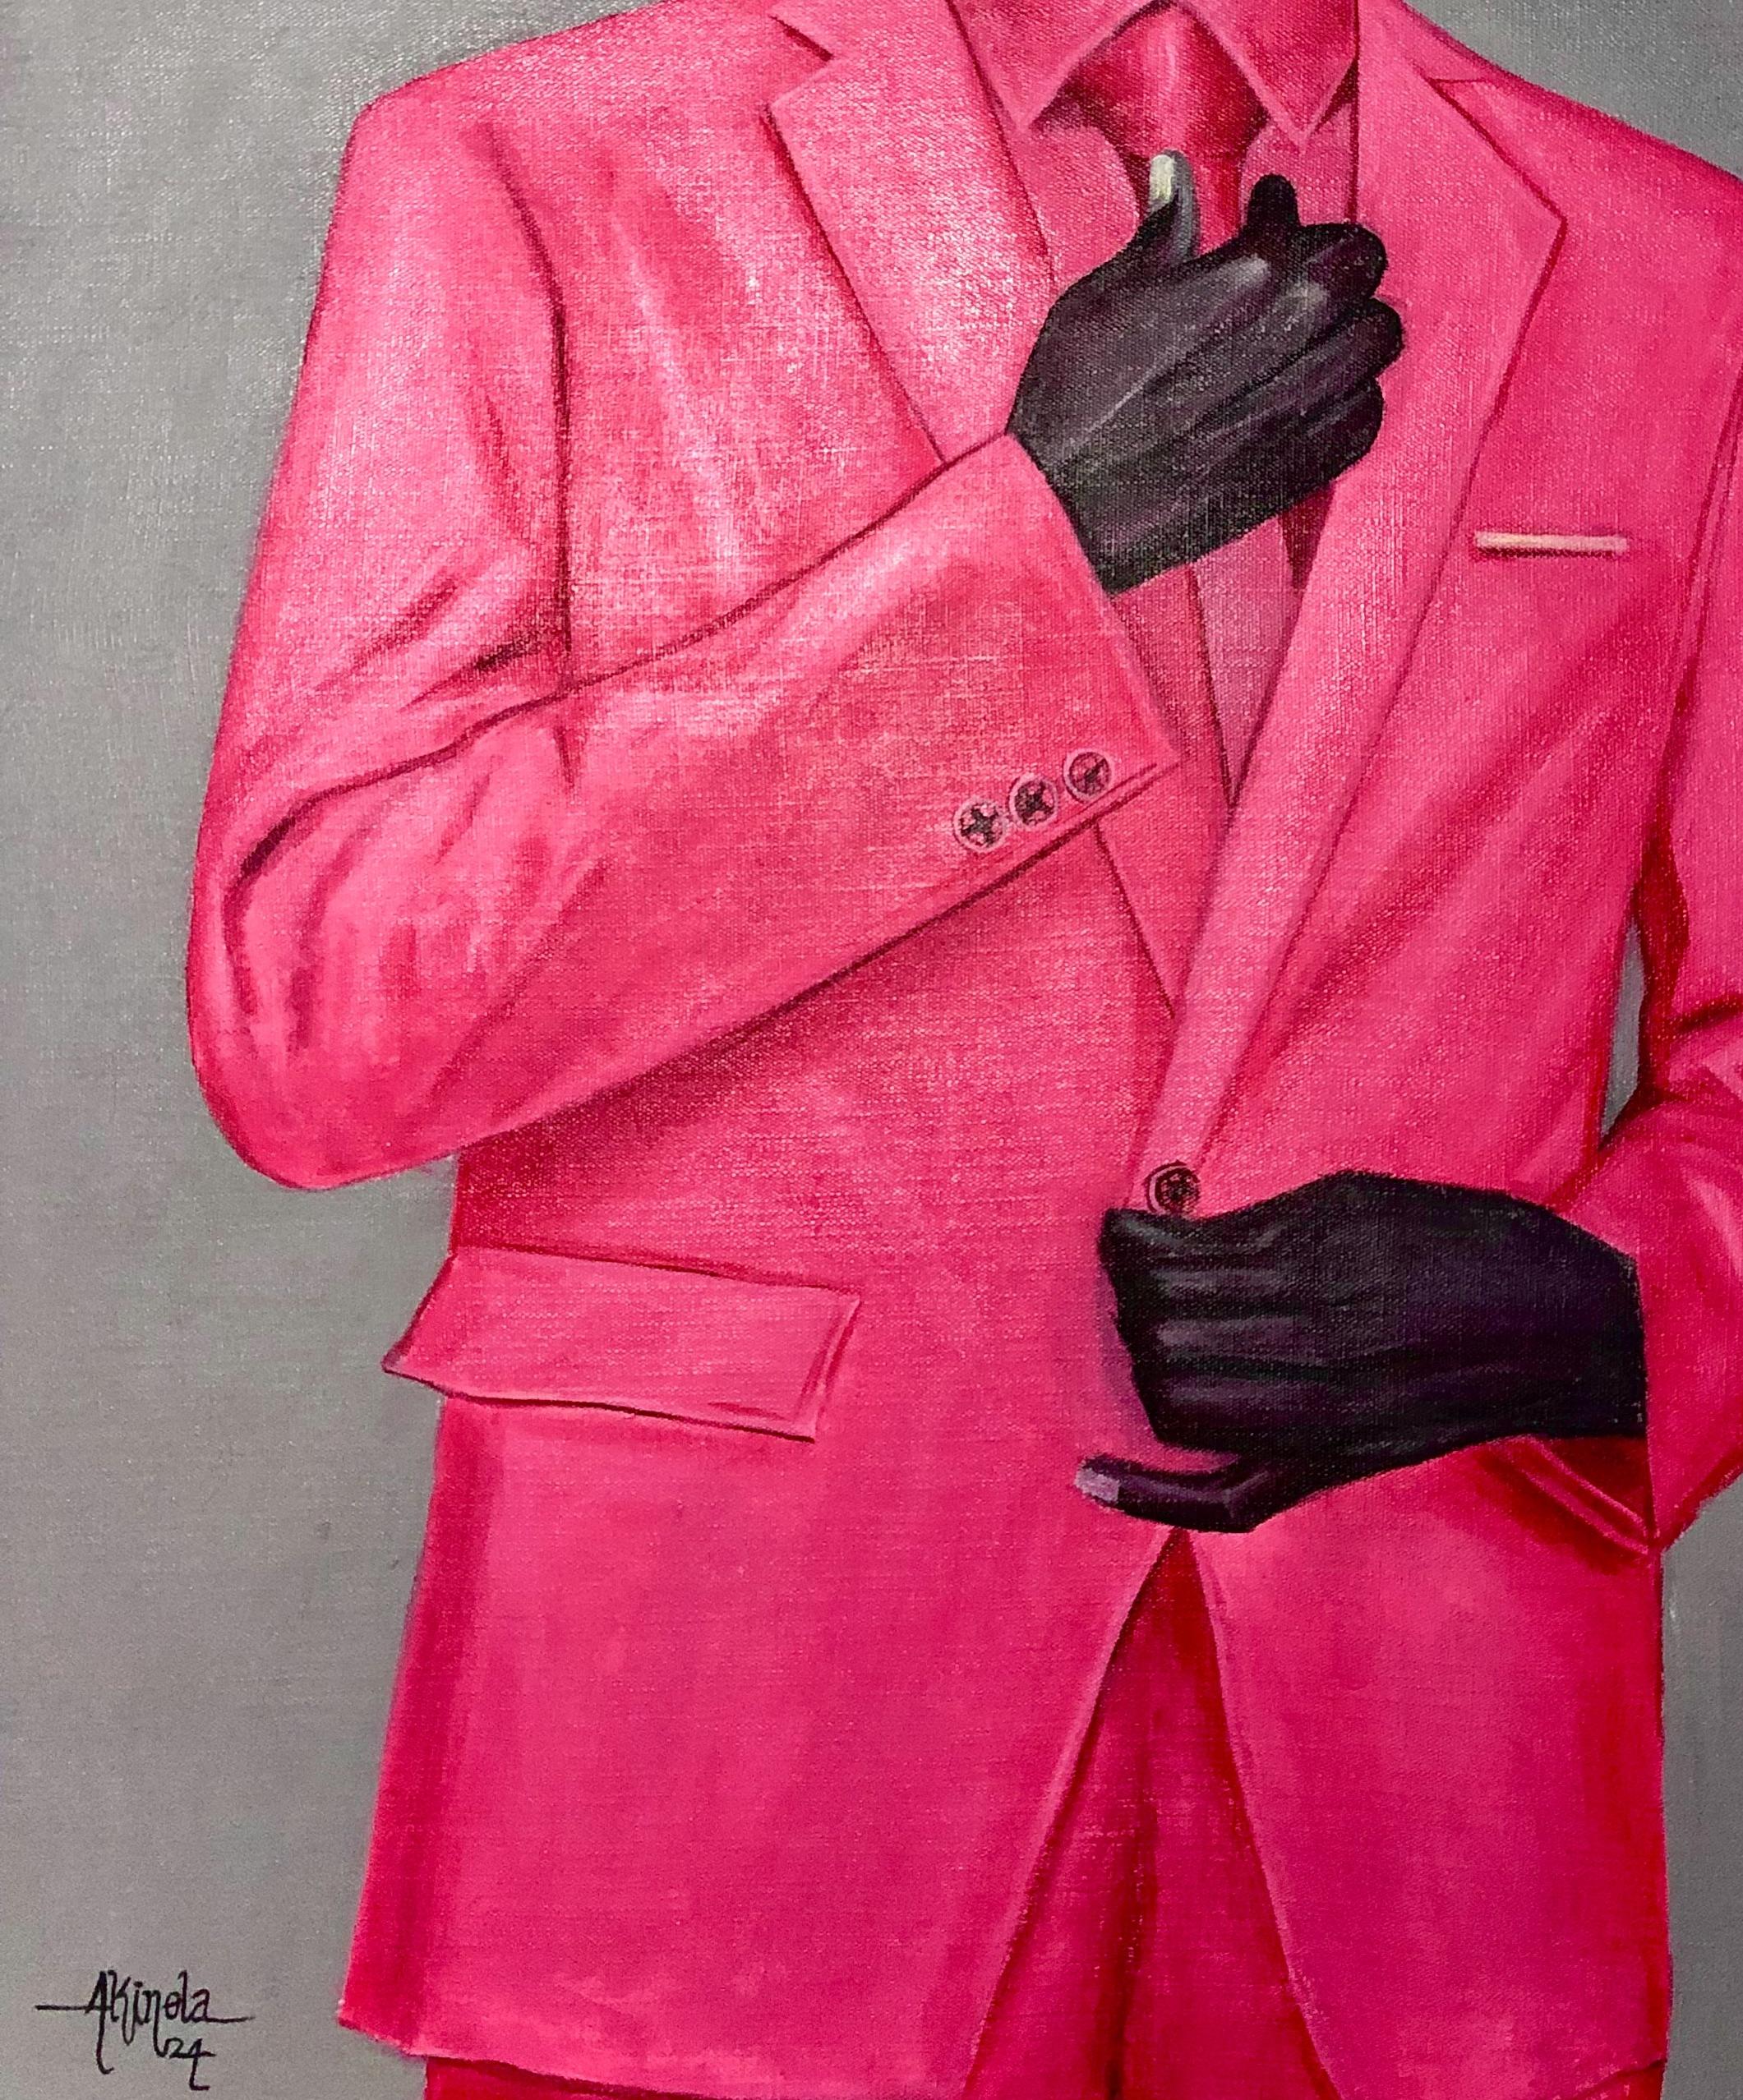 Black Man Stereotype 2 (Mandingo) - Contemporary Painting by Akinboye Akinola Peter